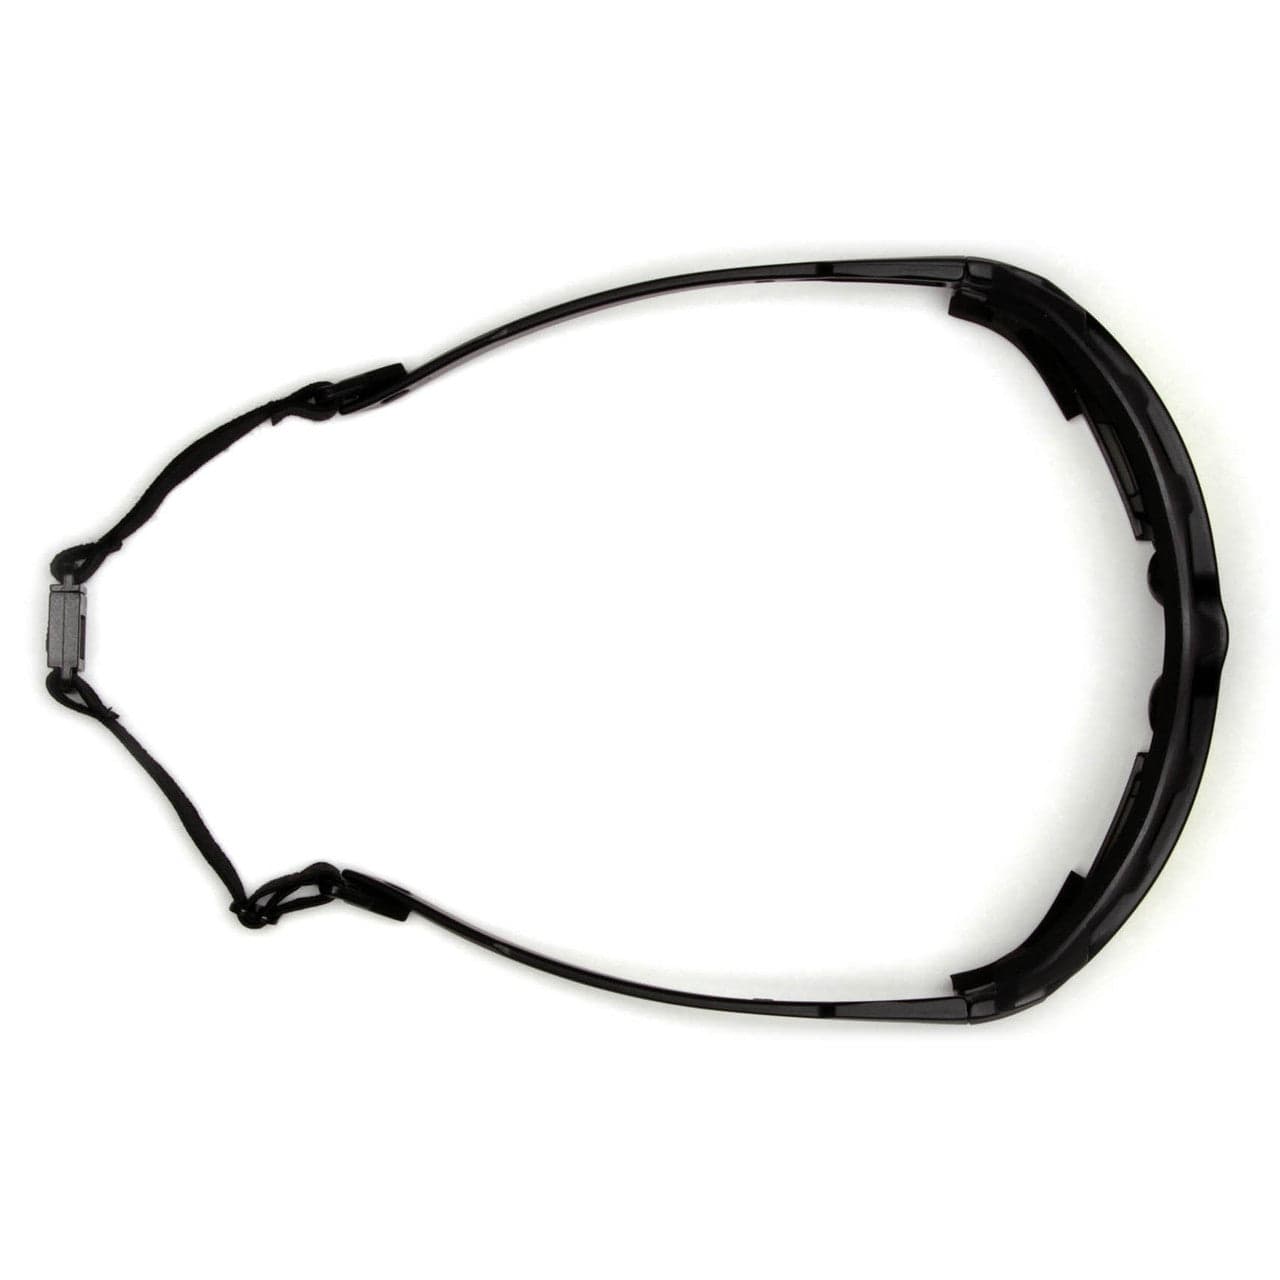 Pyramex Highlander Plus Safety Glasses Black Foam-Lined Frame Indoor/Outdoor Anti-Fog Lens SBG5080DT Top